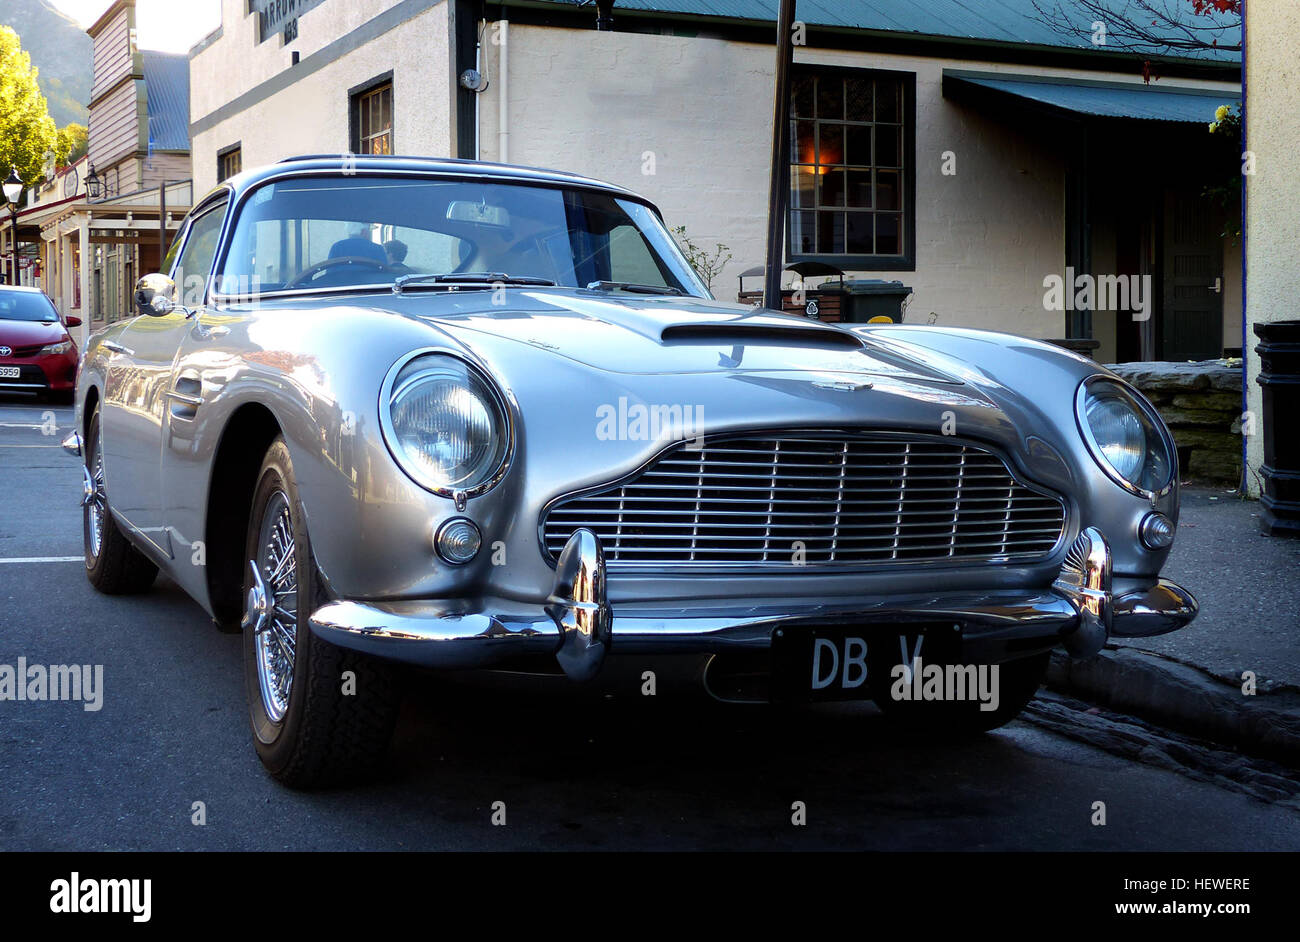 L'Aston Martin DB5 est un luxe grand tourer qui a été faite par Aston Martin et conçu par le carrossier Italien Carrozzeria Touring Superleggera. Libéré en 1963, il a été une évolution de la série finale de DB4. La série DB a été nommé en l'honneur David Brown (le chef de l'Aston Martin de 1947 à 1972). Bien que ce ne soit pas la première, la DB5 est célèbre pour être le plus reconnu James Bond cinématographique, première voiture apparaissant dans Goldfinger (1964) Banque D'Images